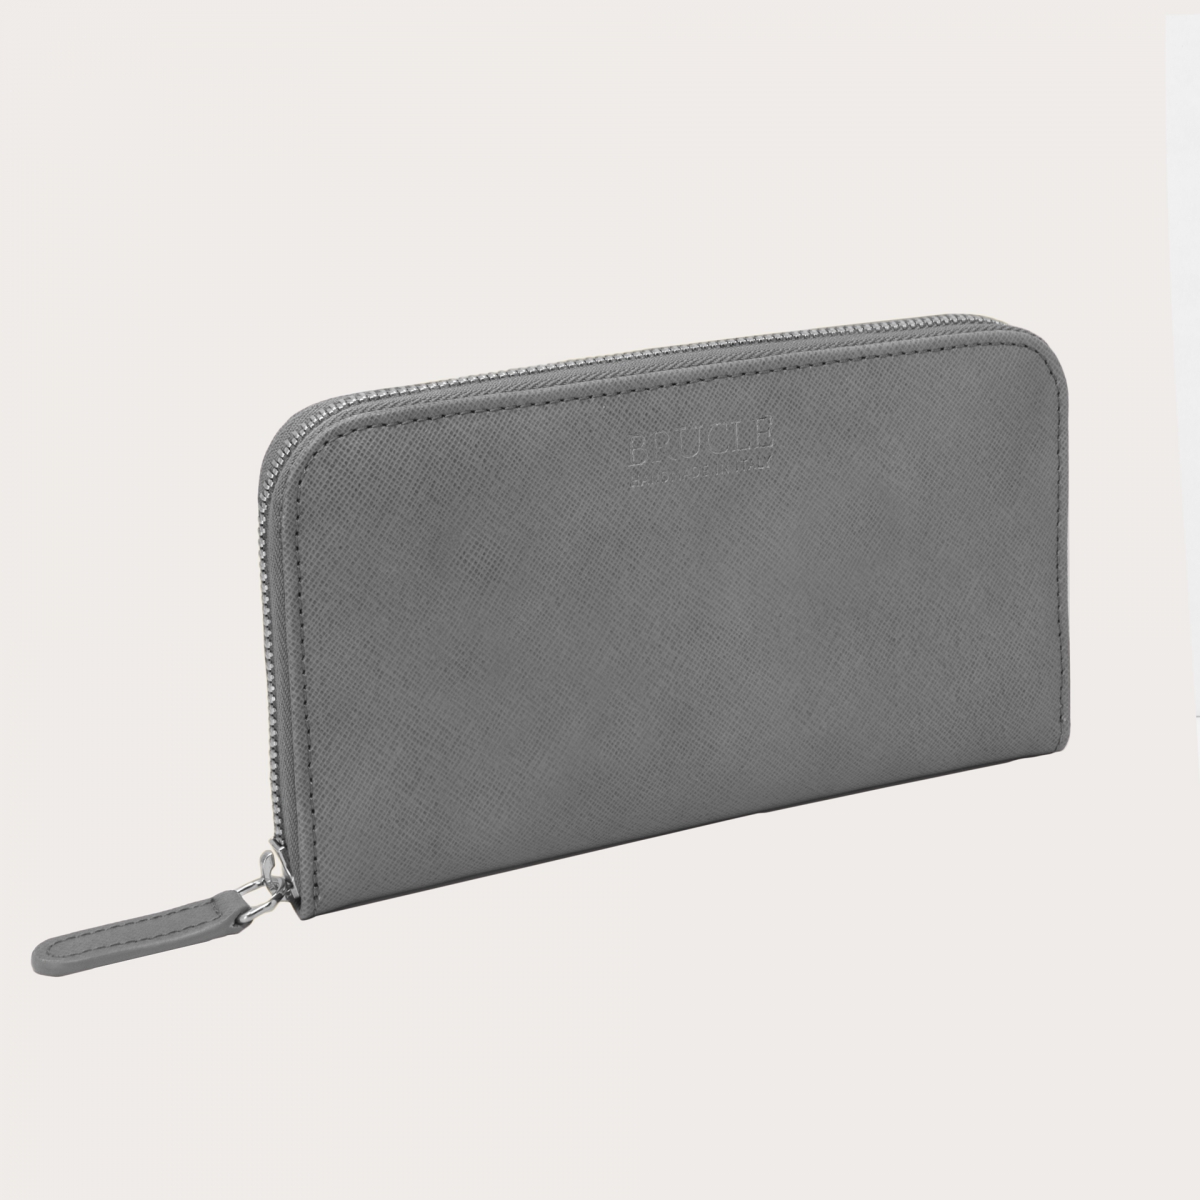 BRUCLE Portefeuille smart zippé en imprimé saffiano pour femme, gris cendre